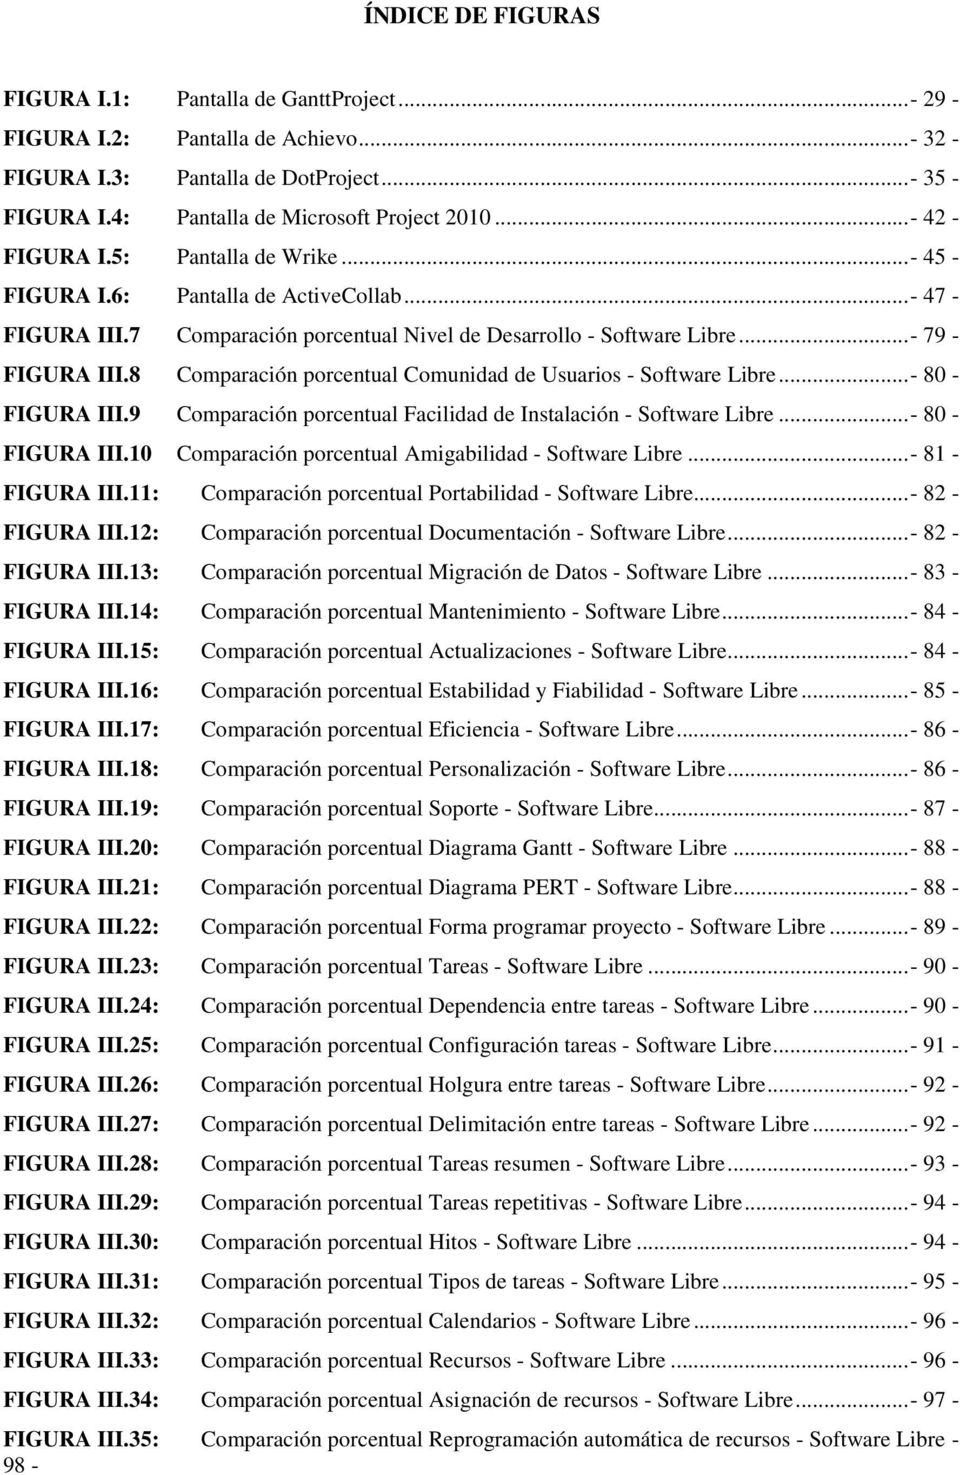 8 Comparación porcentual Comunidad de Usuarios - Software Libre... - 80 - FIGURA III.9 Comparación porcentual Facilidad de Instalación - Software Libre... - 80 - FIGURA III.10 Comparación porcentual Amigabilidad - Software Libre.